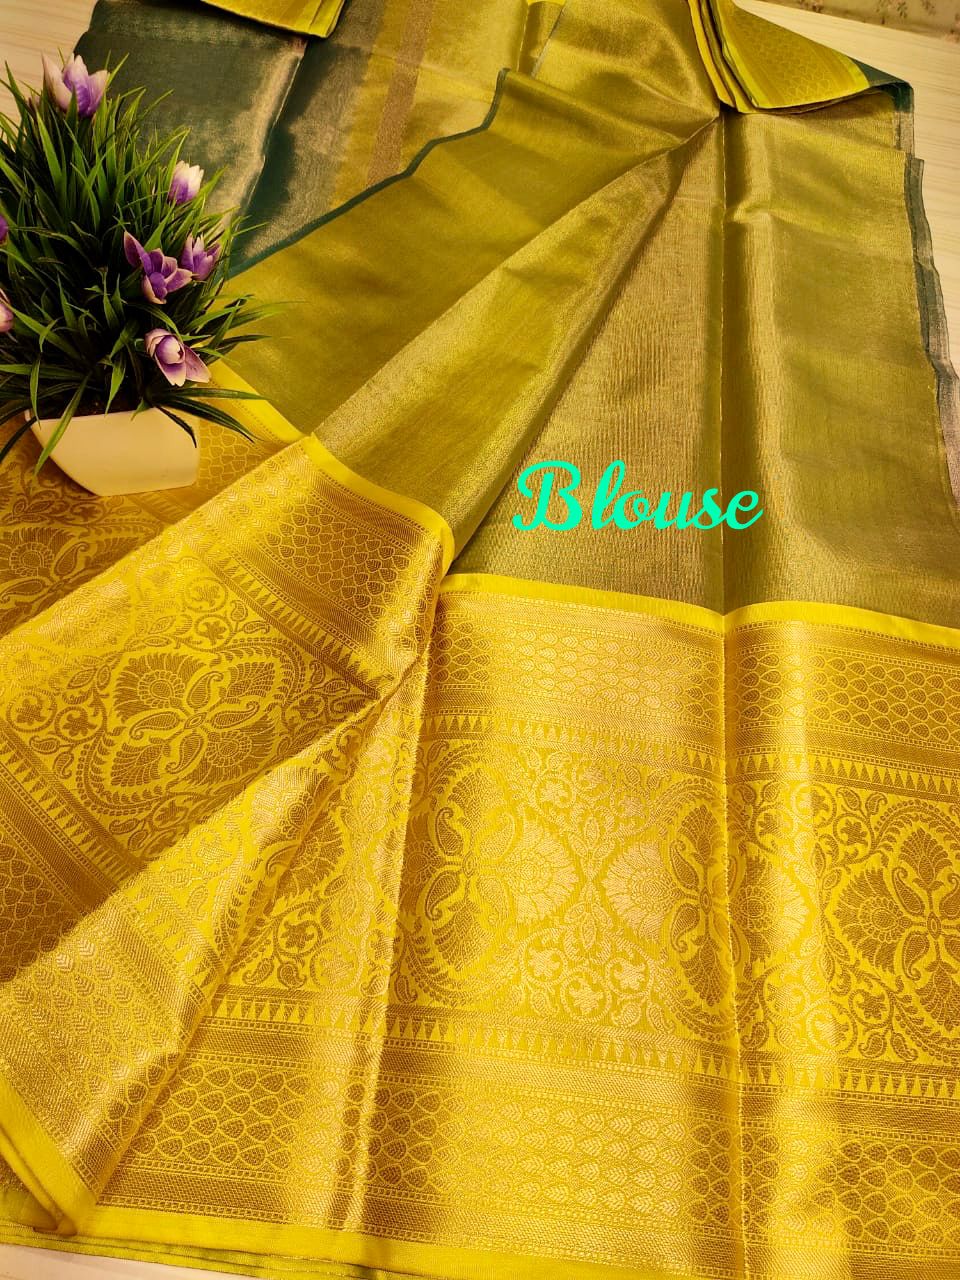 Kanchi Tissue sarees